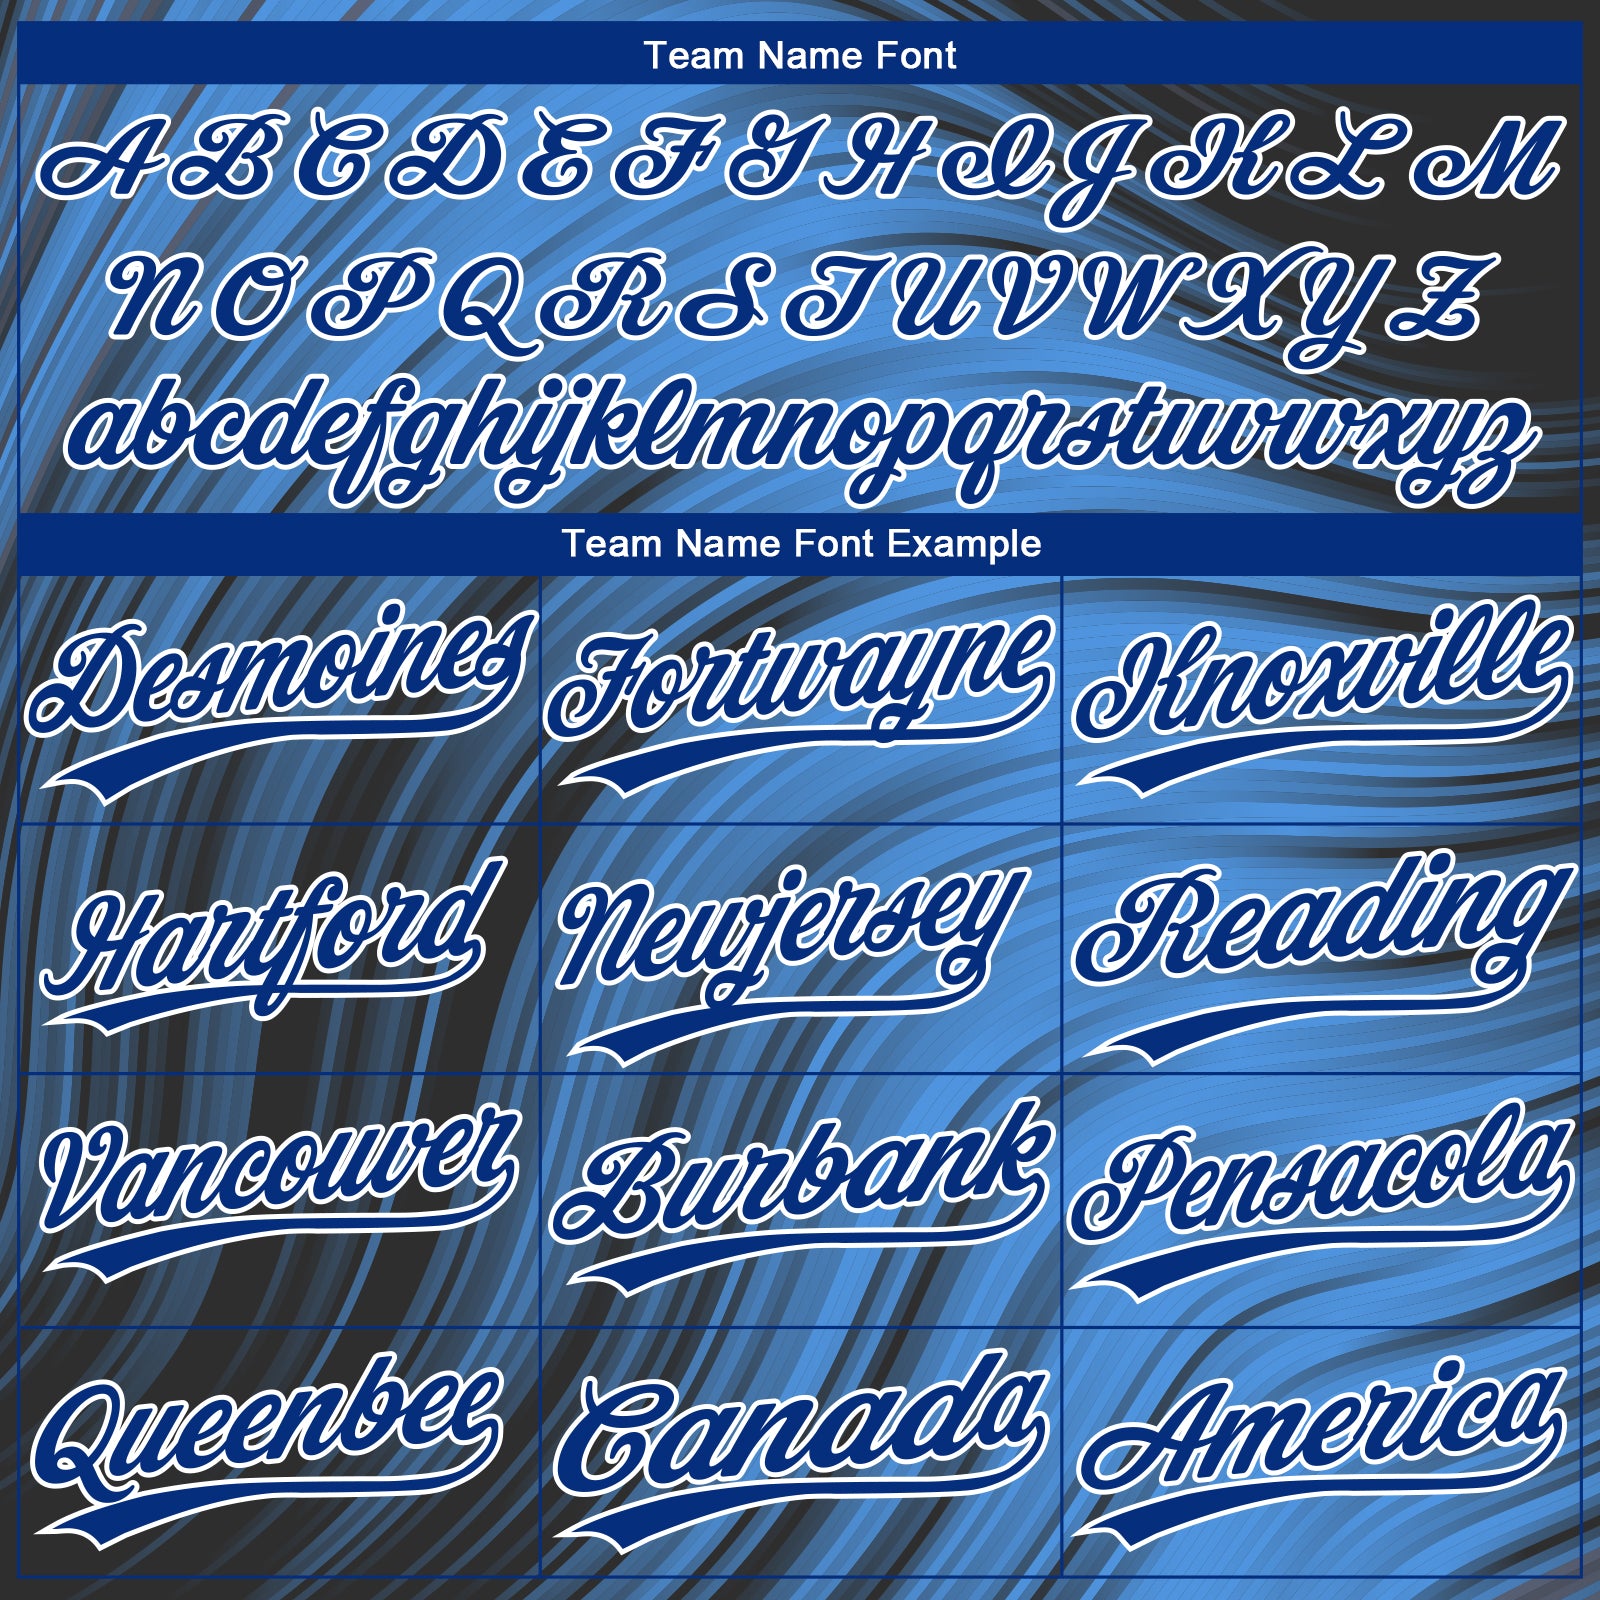 Custom Royal White-Light Blue Baseball Jersey – FanCustom